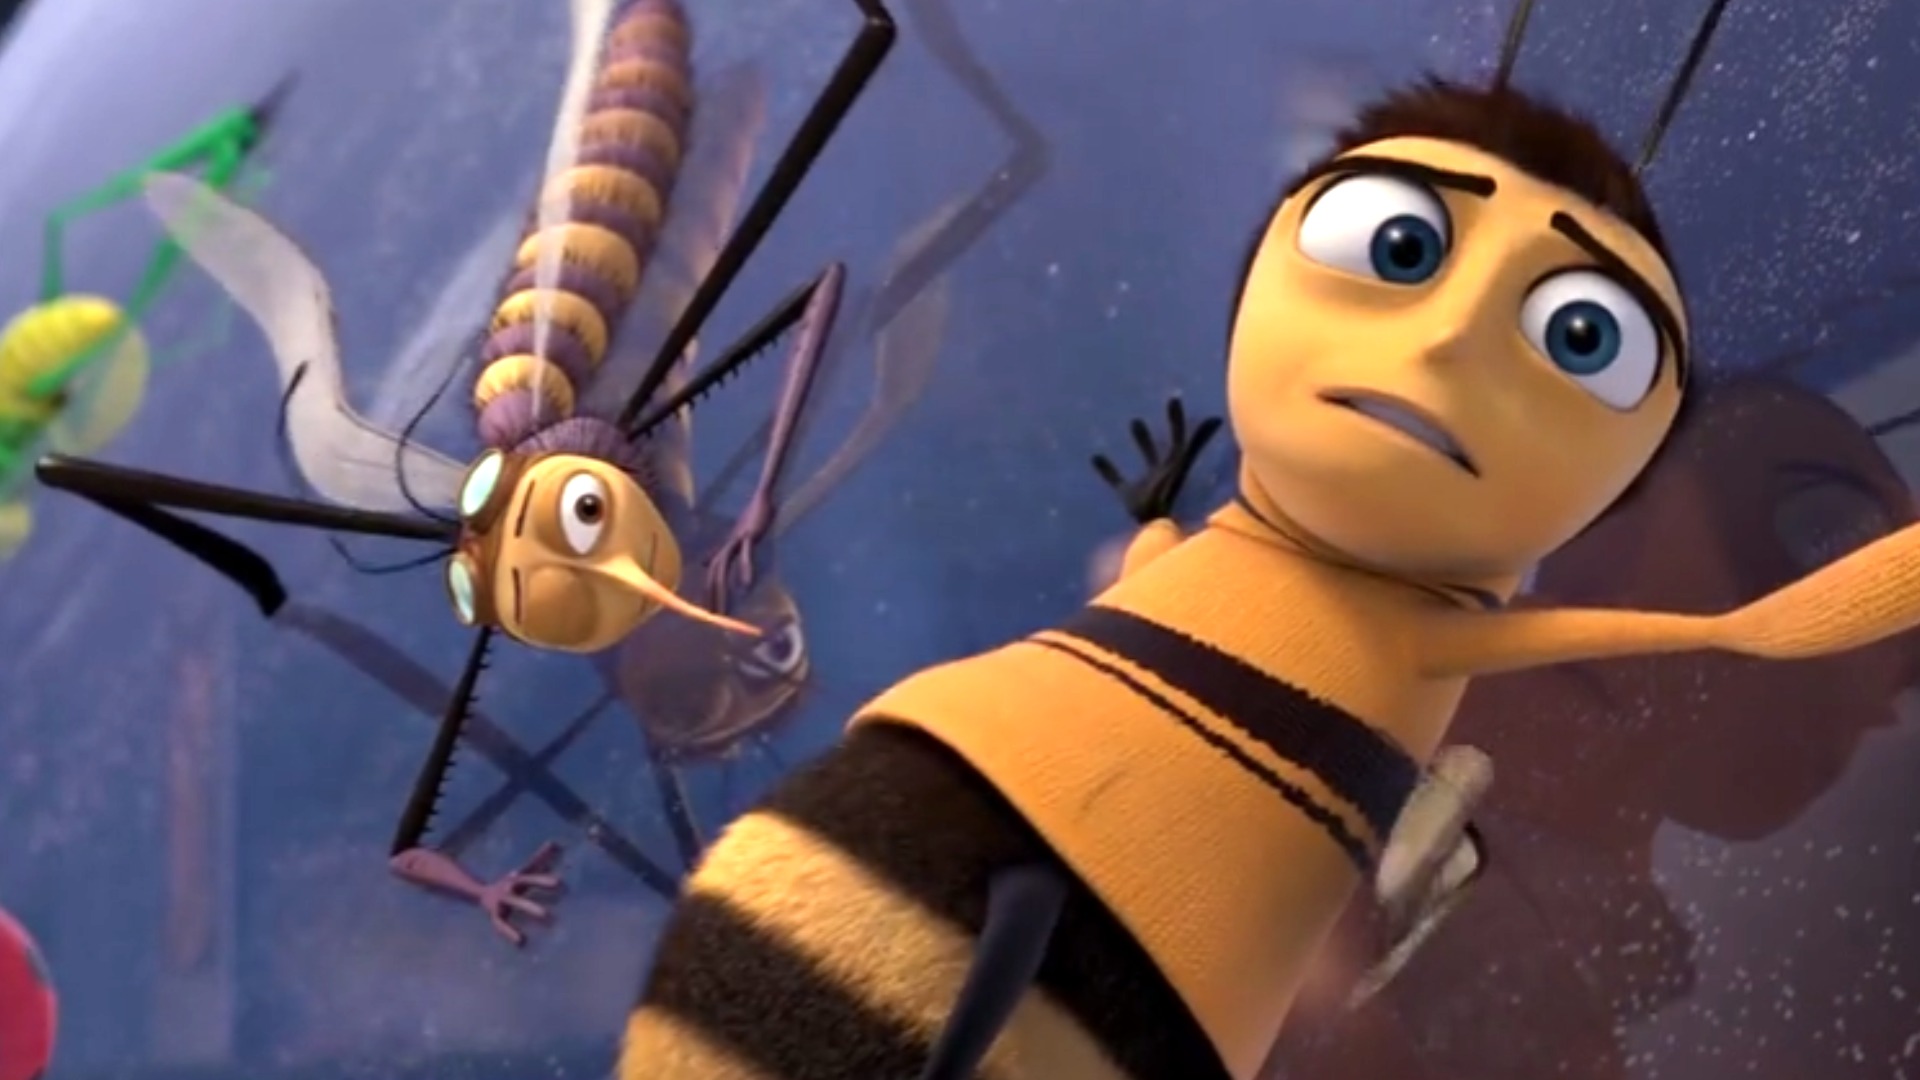 honey bee 2 full movie download dvdwap